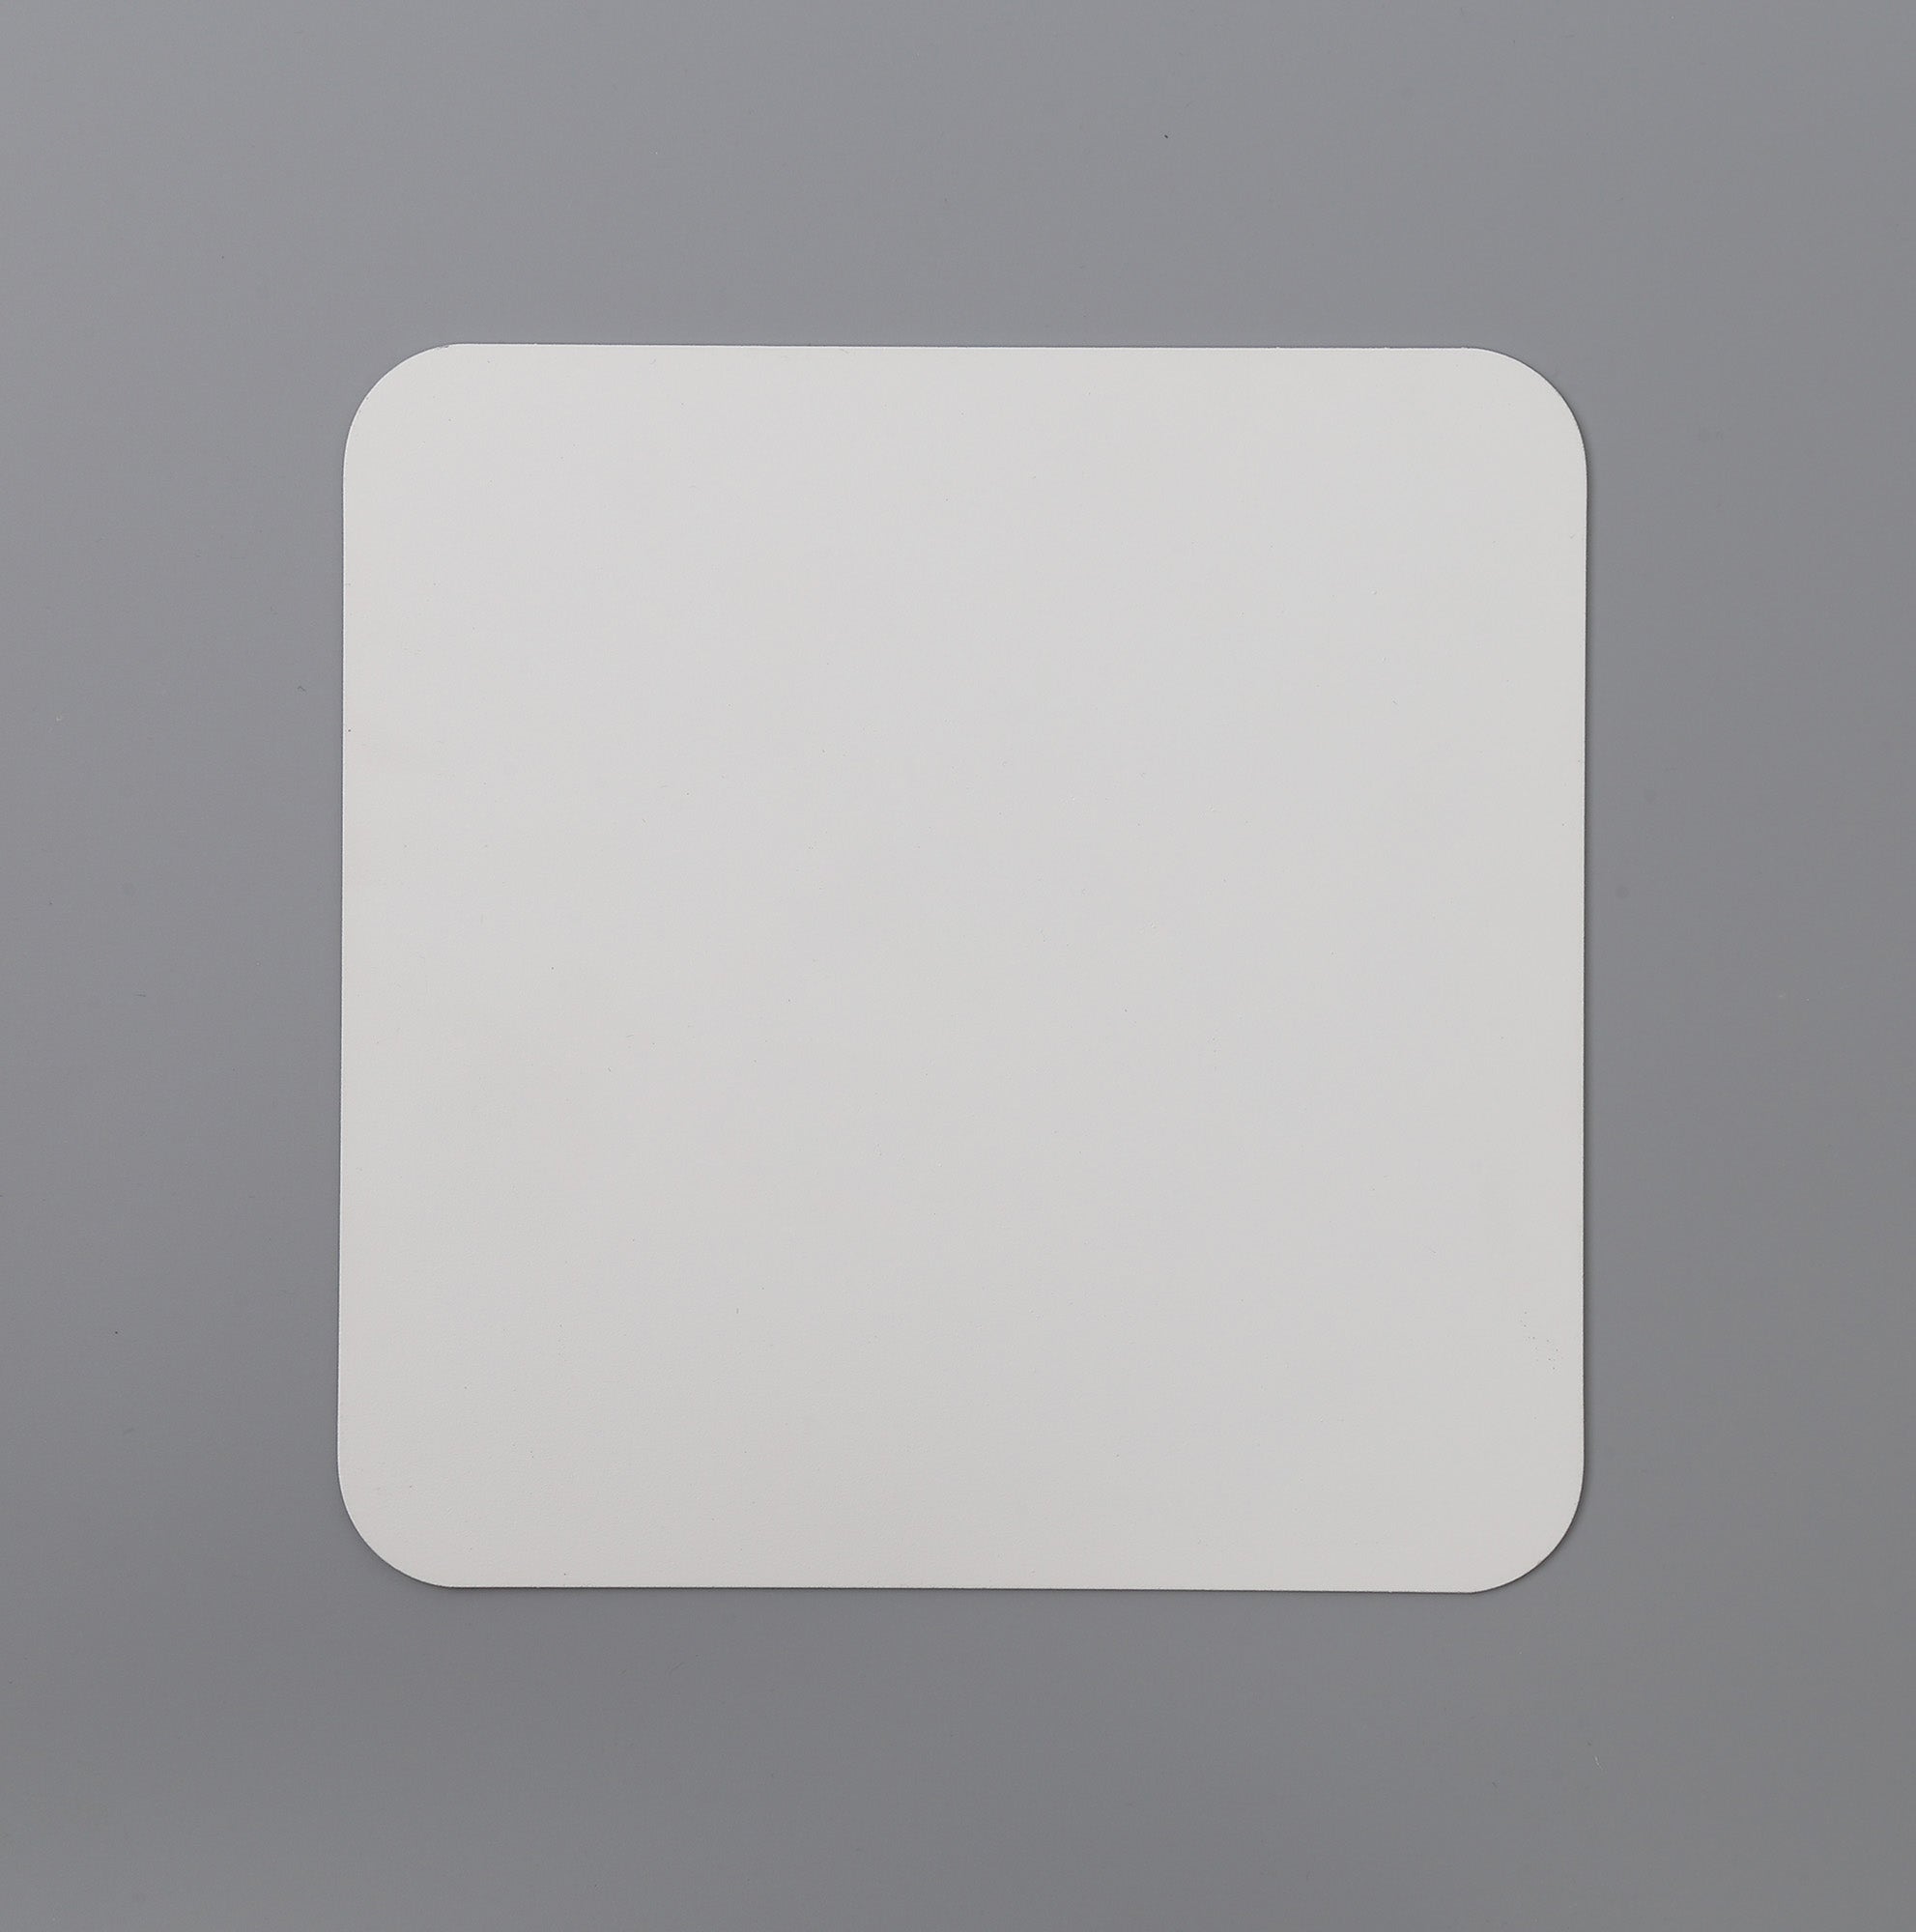 Modus 200mm Non-Electric Square Plate, Sand White